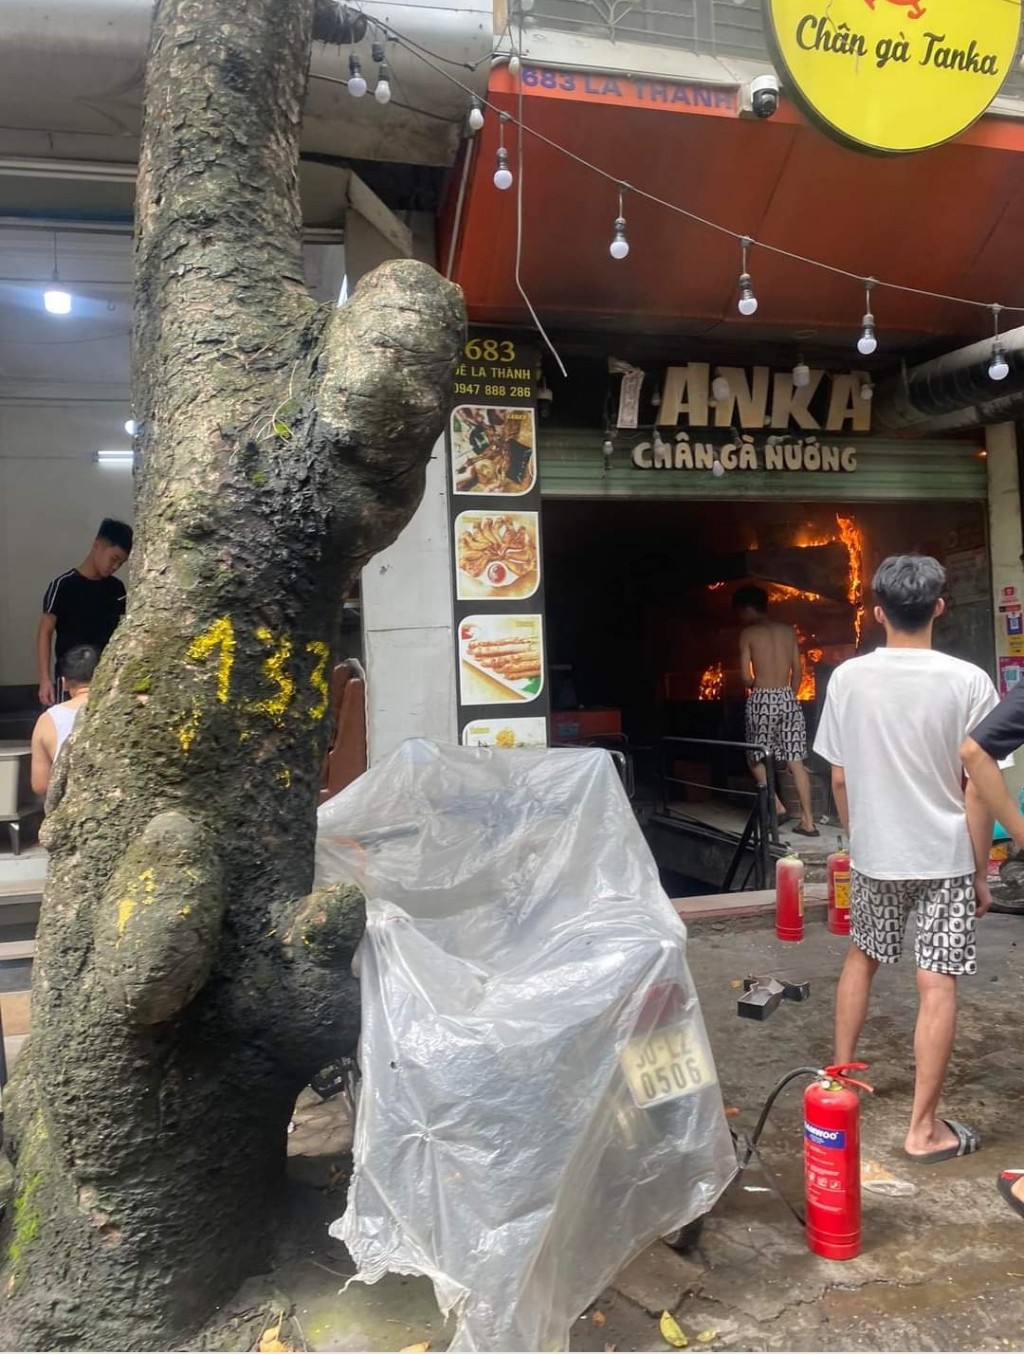 Cháy tại quán kinh doanh chân gà nướng trên phố Đê La Thành